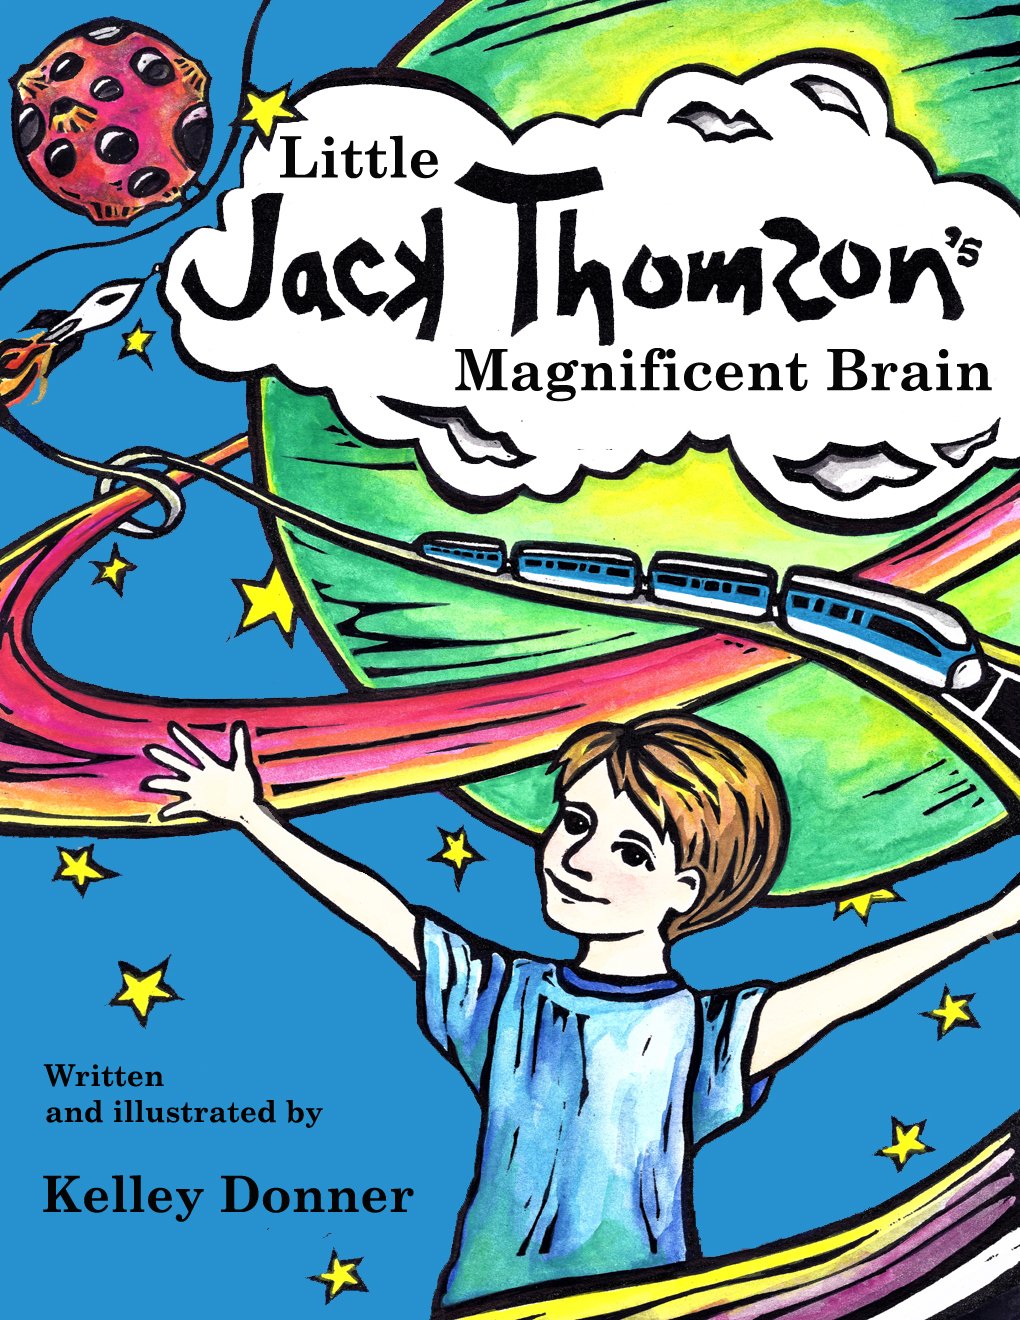 Little Jack Thomson's Magnificent Brain